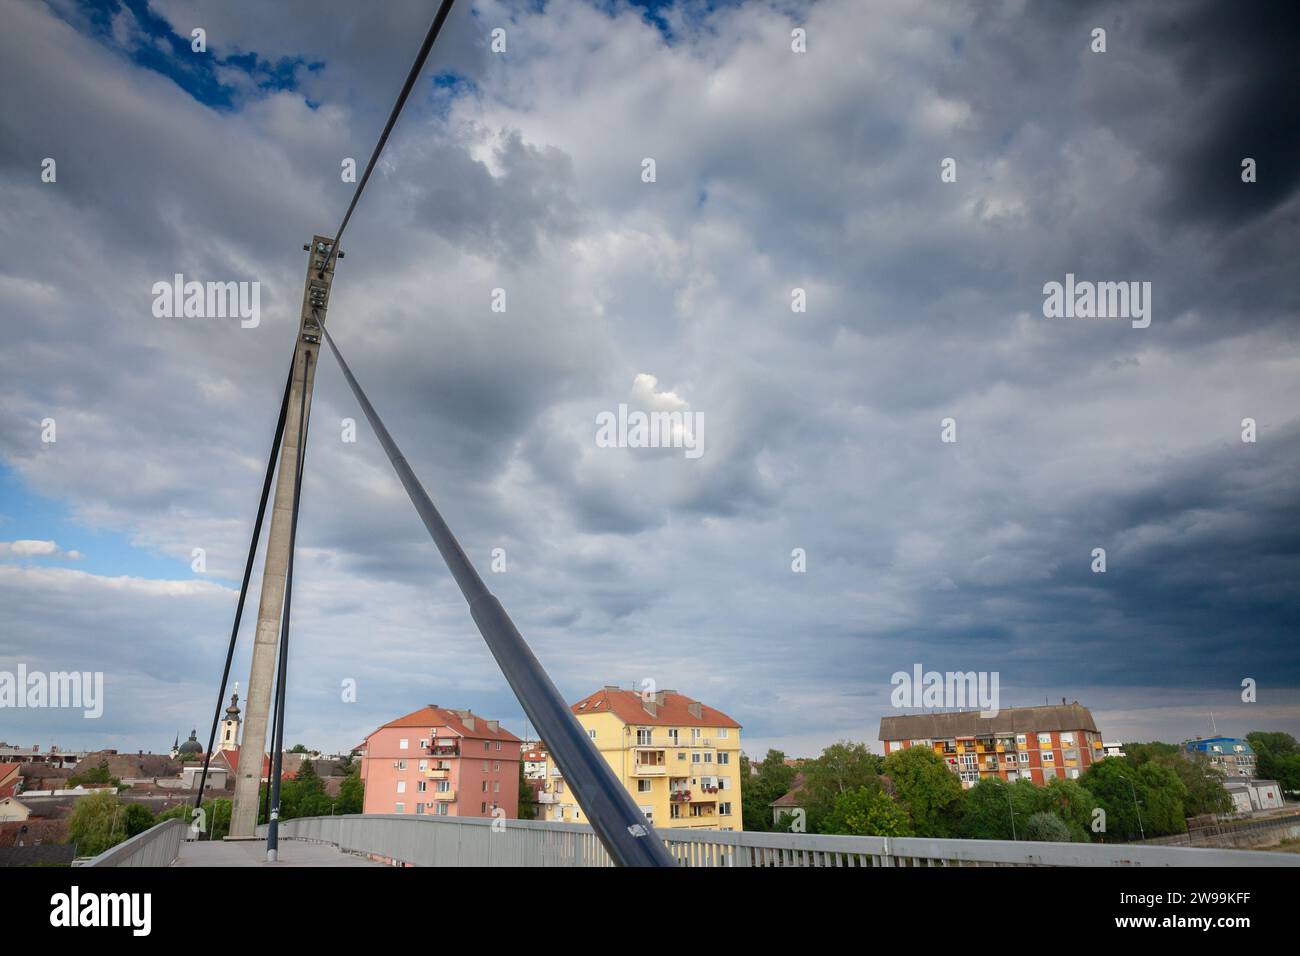 Bild der Brücke Sremska mitrovica saint irinej. Sremska Mitrovica ist eine Stadt und das Verwaltungszentrum des Bezirks Srem im autonomen Pro Stockfoto